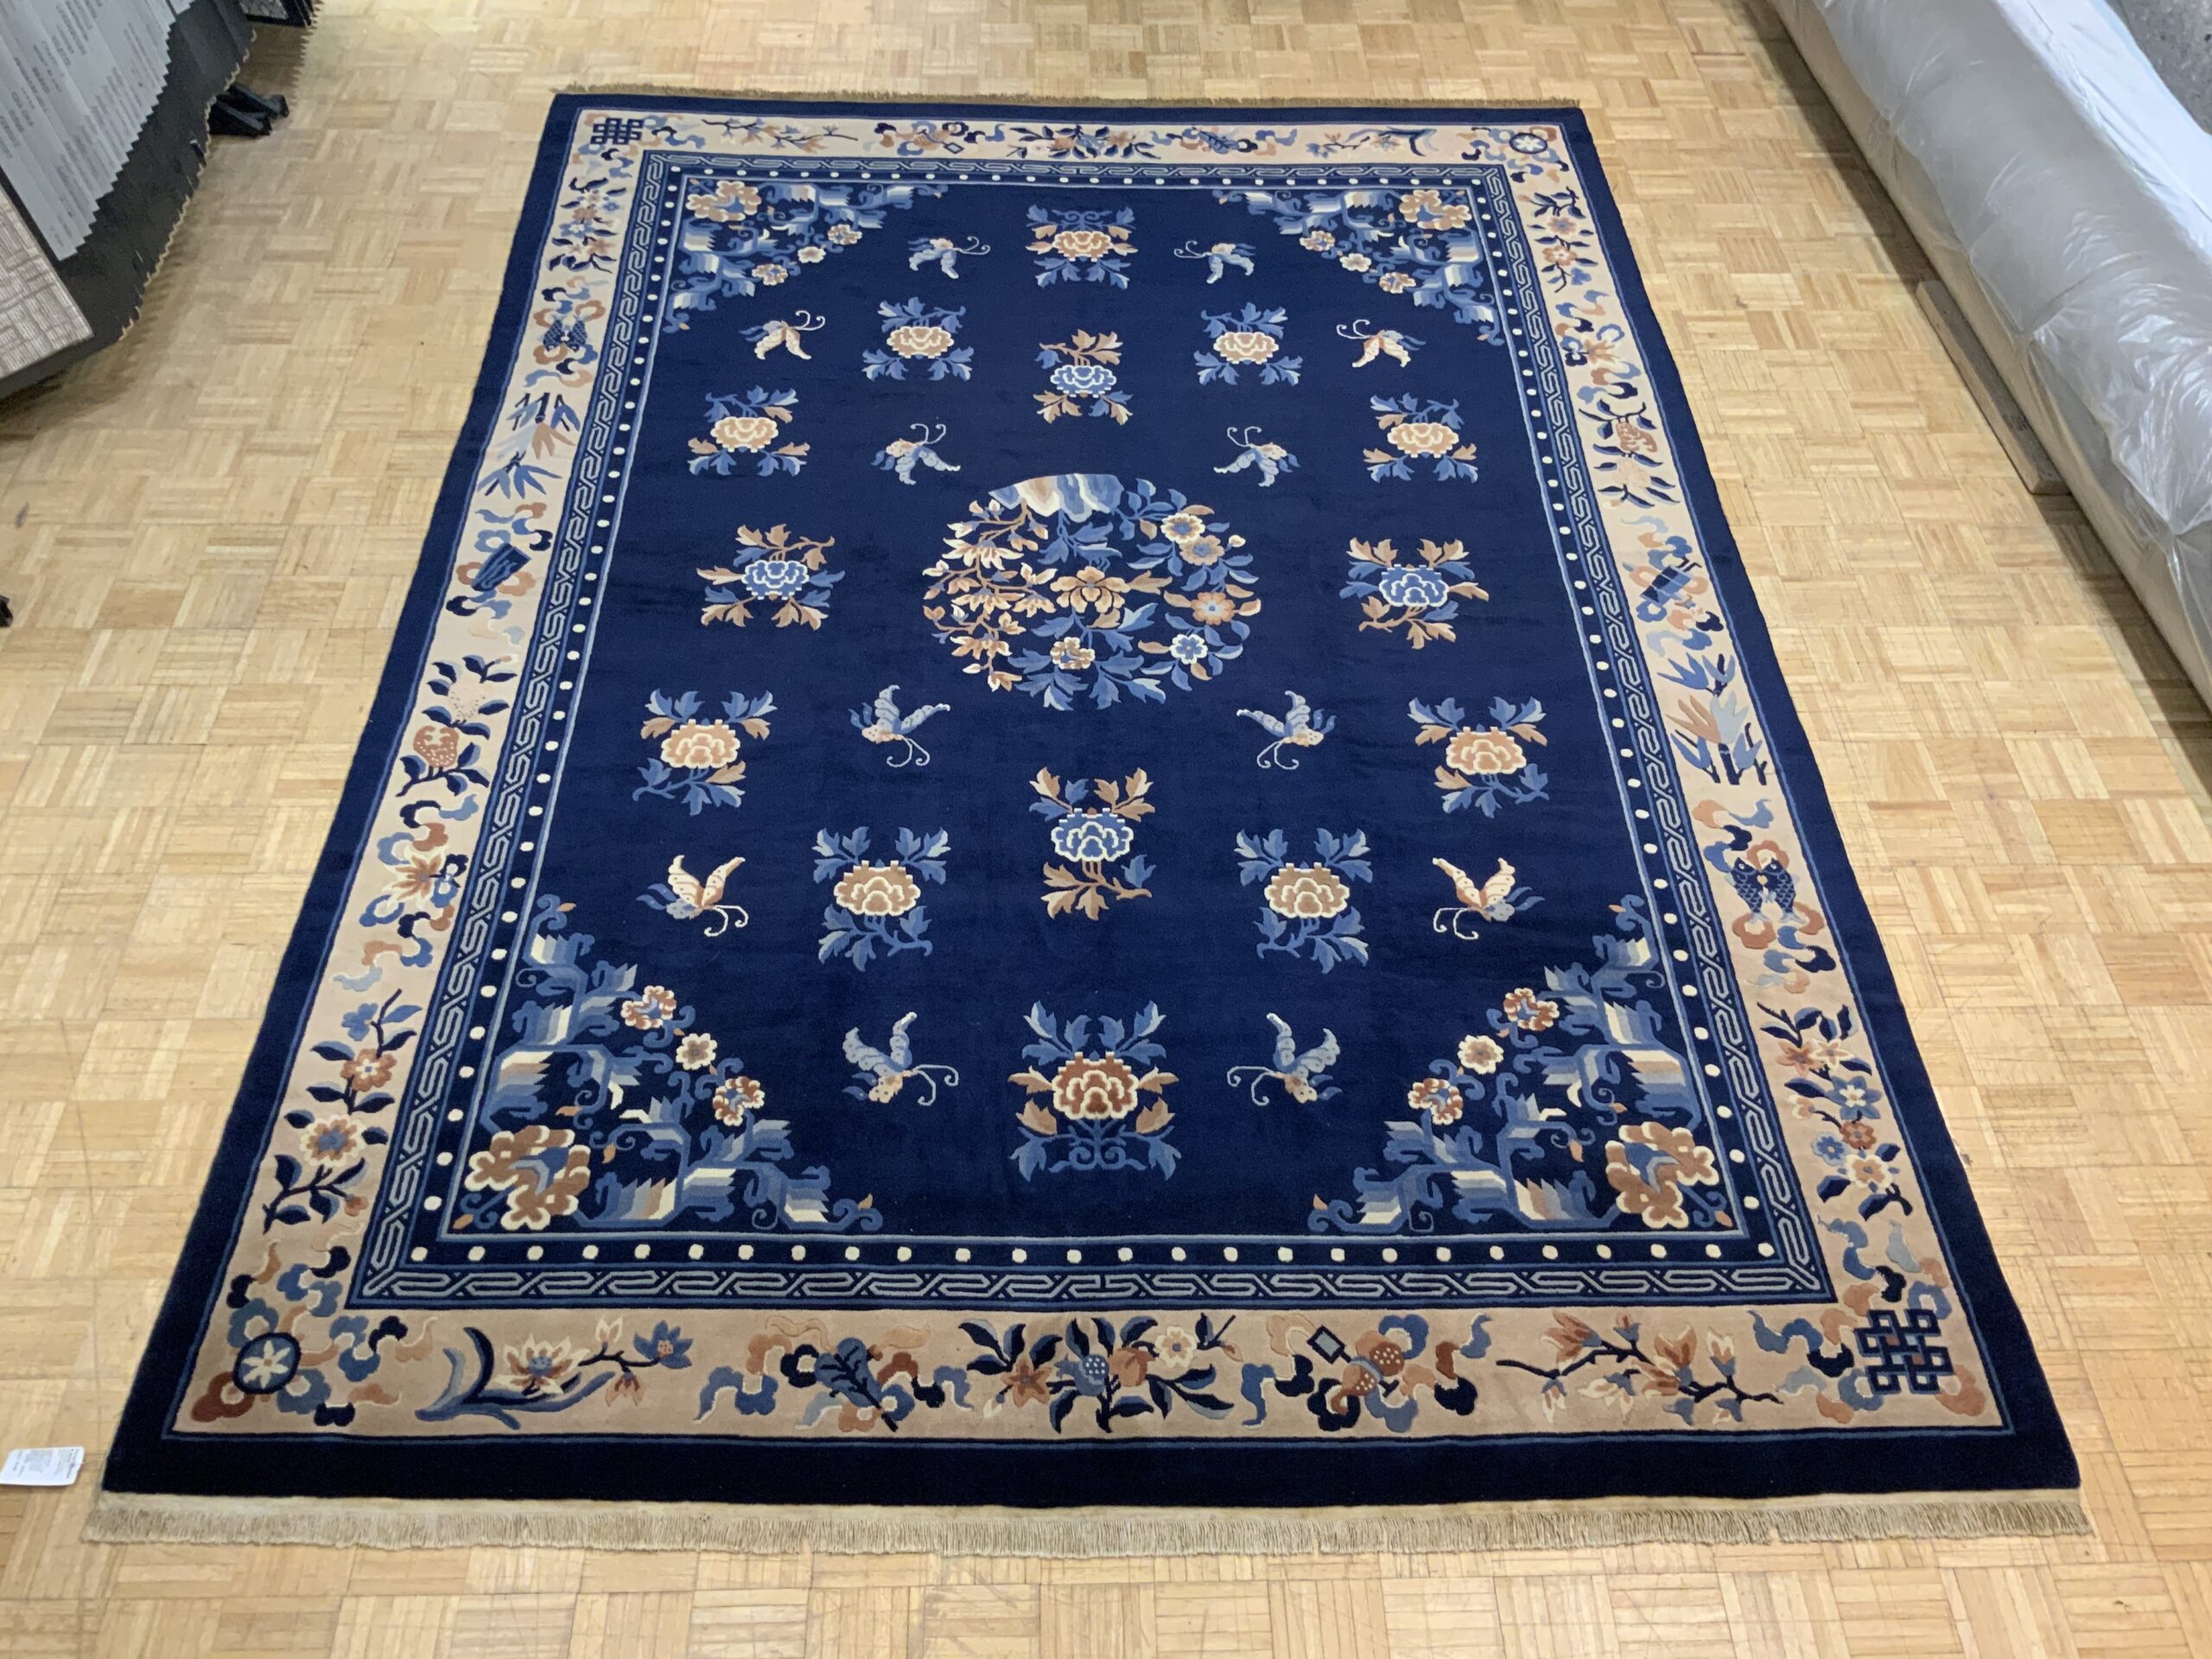 David Tiftickjian & Sons, oriental rugs, Buffalo rugs, oriental rug dealers Buffalo, Buffalo flooring, modern rugs, new rugs, used rugs, vintage rugs